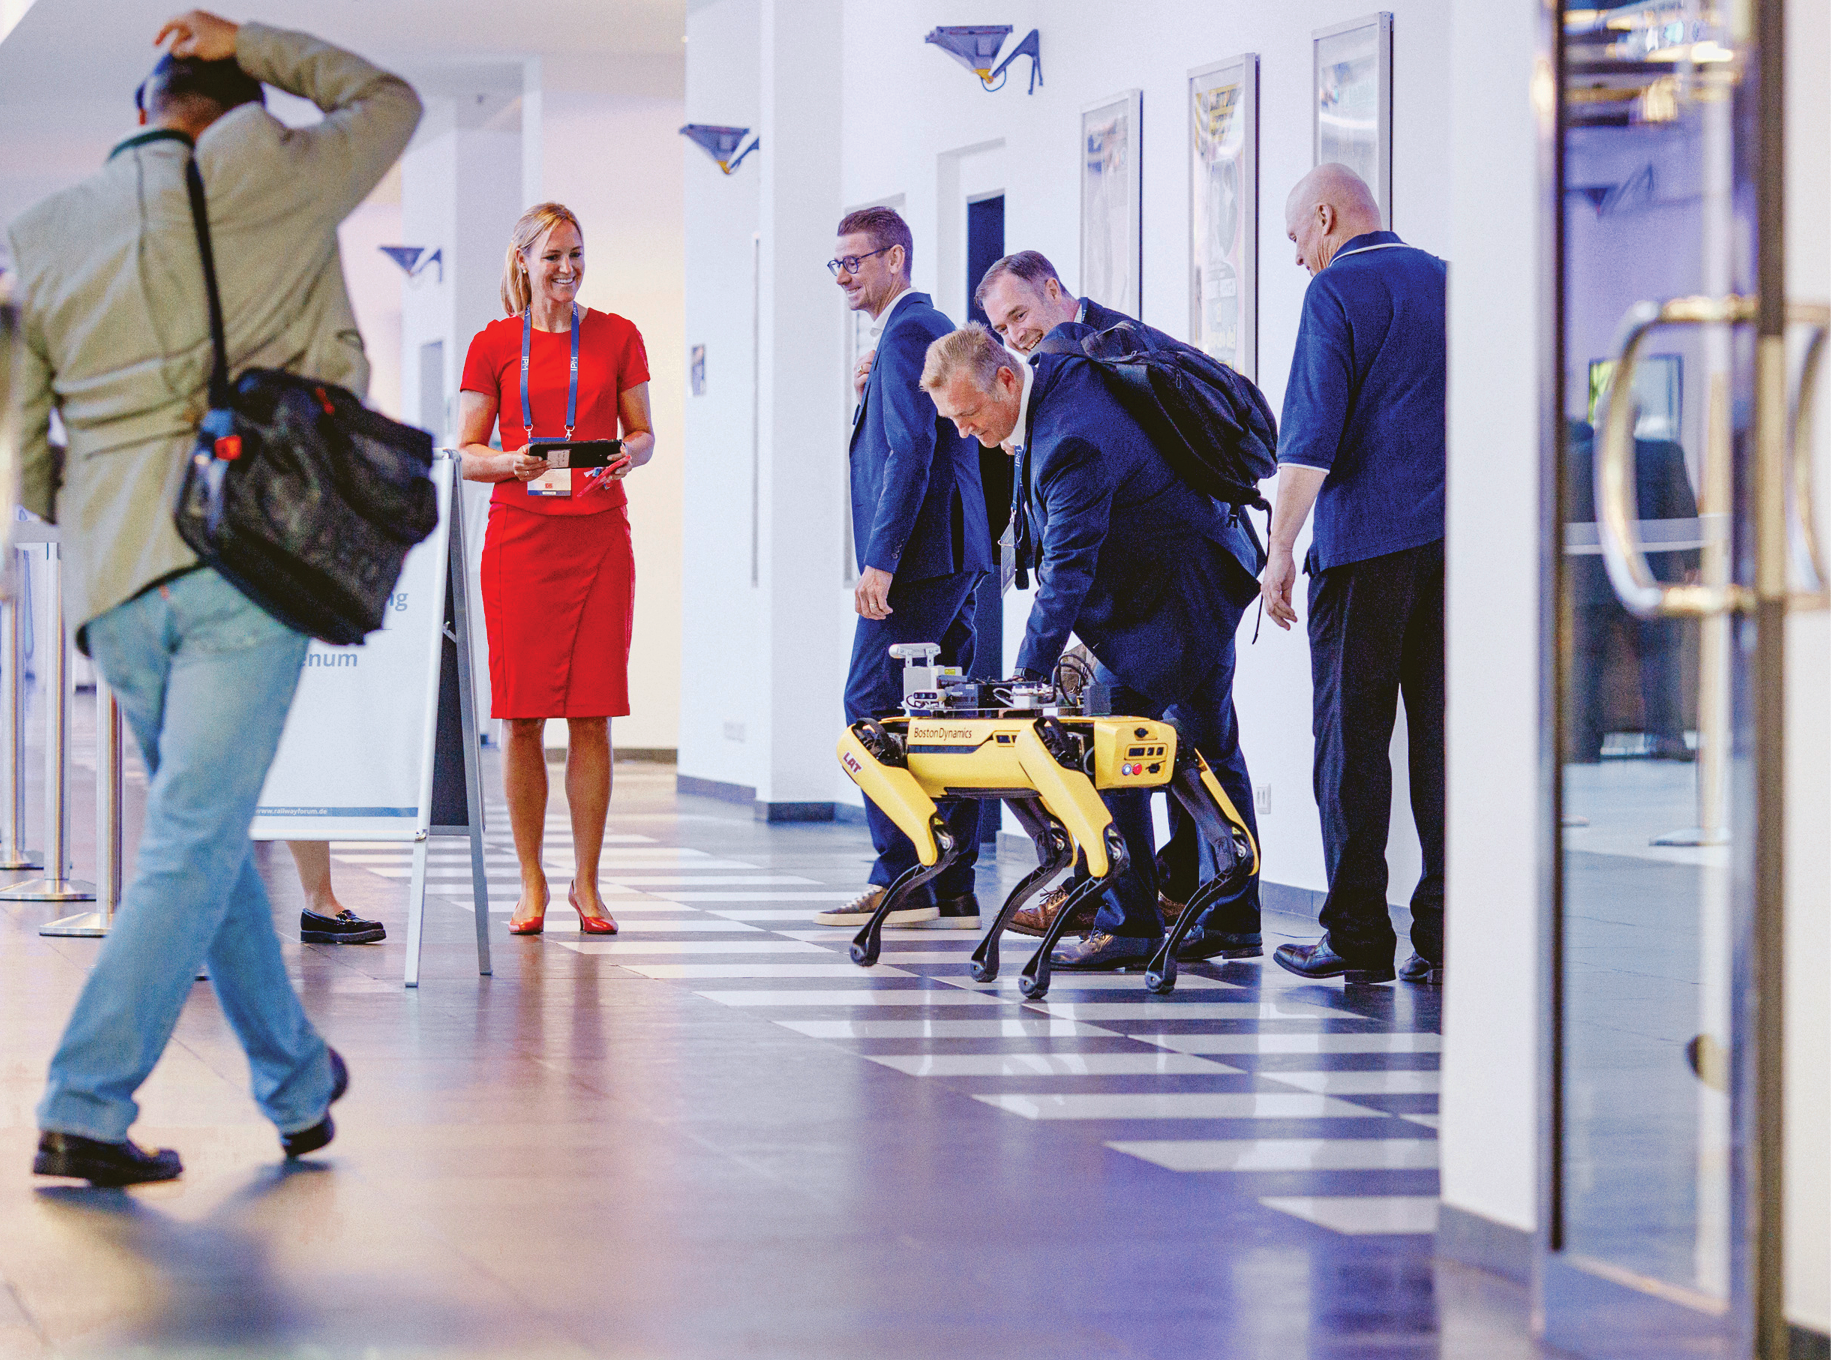 Ließ sich streicheln, nahm aber keine Leckerlis an: Ein Robodog von Boston Dynamics drehte seine Runden durch die Konferenzräumlichkeiten des Berliner Estrel Hotels